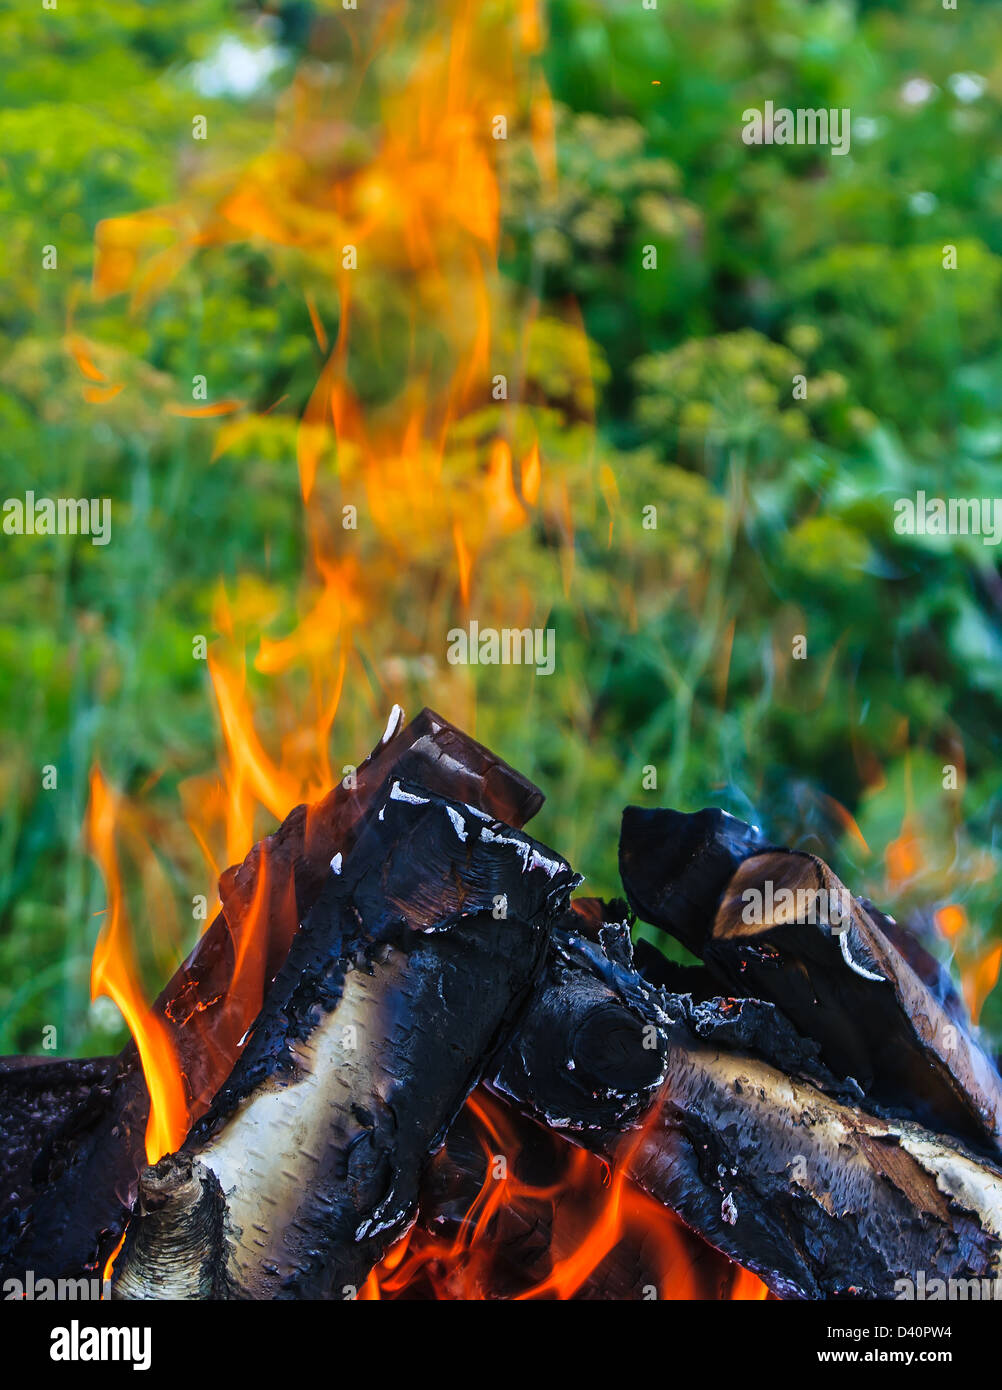 Flamme eines brennenden Feuers gegen Grünpflanzen Stockfoto